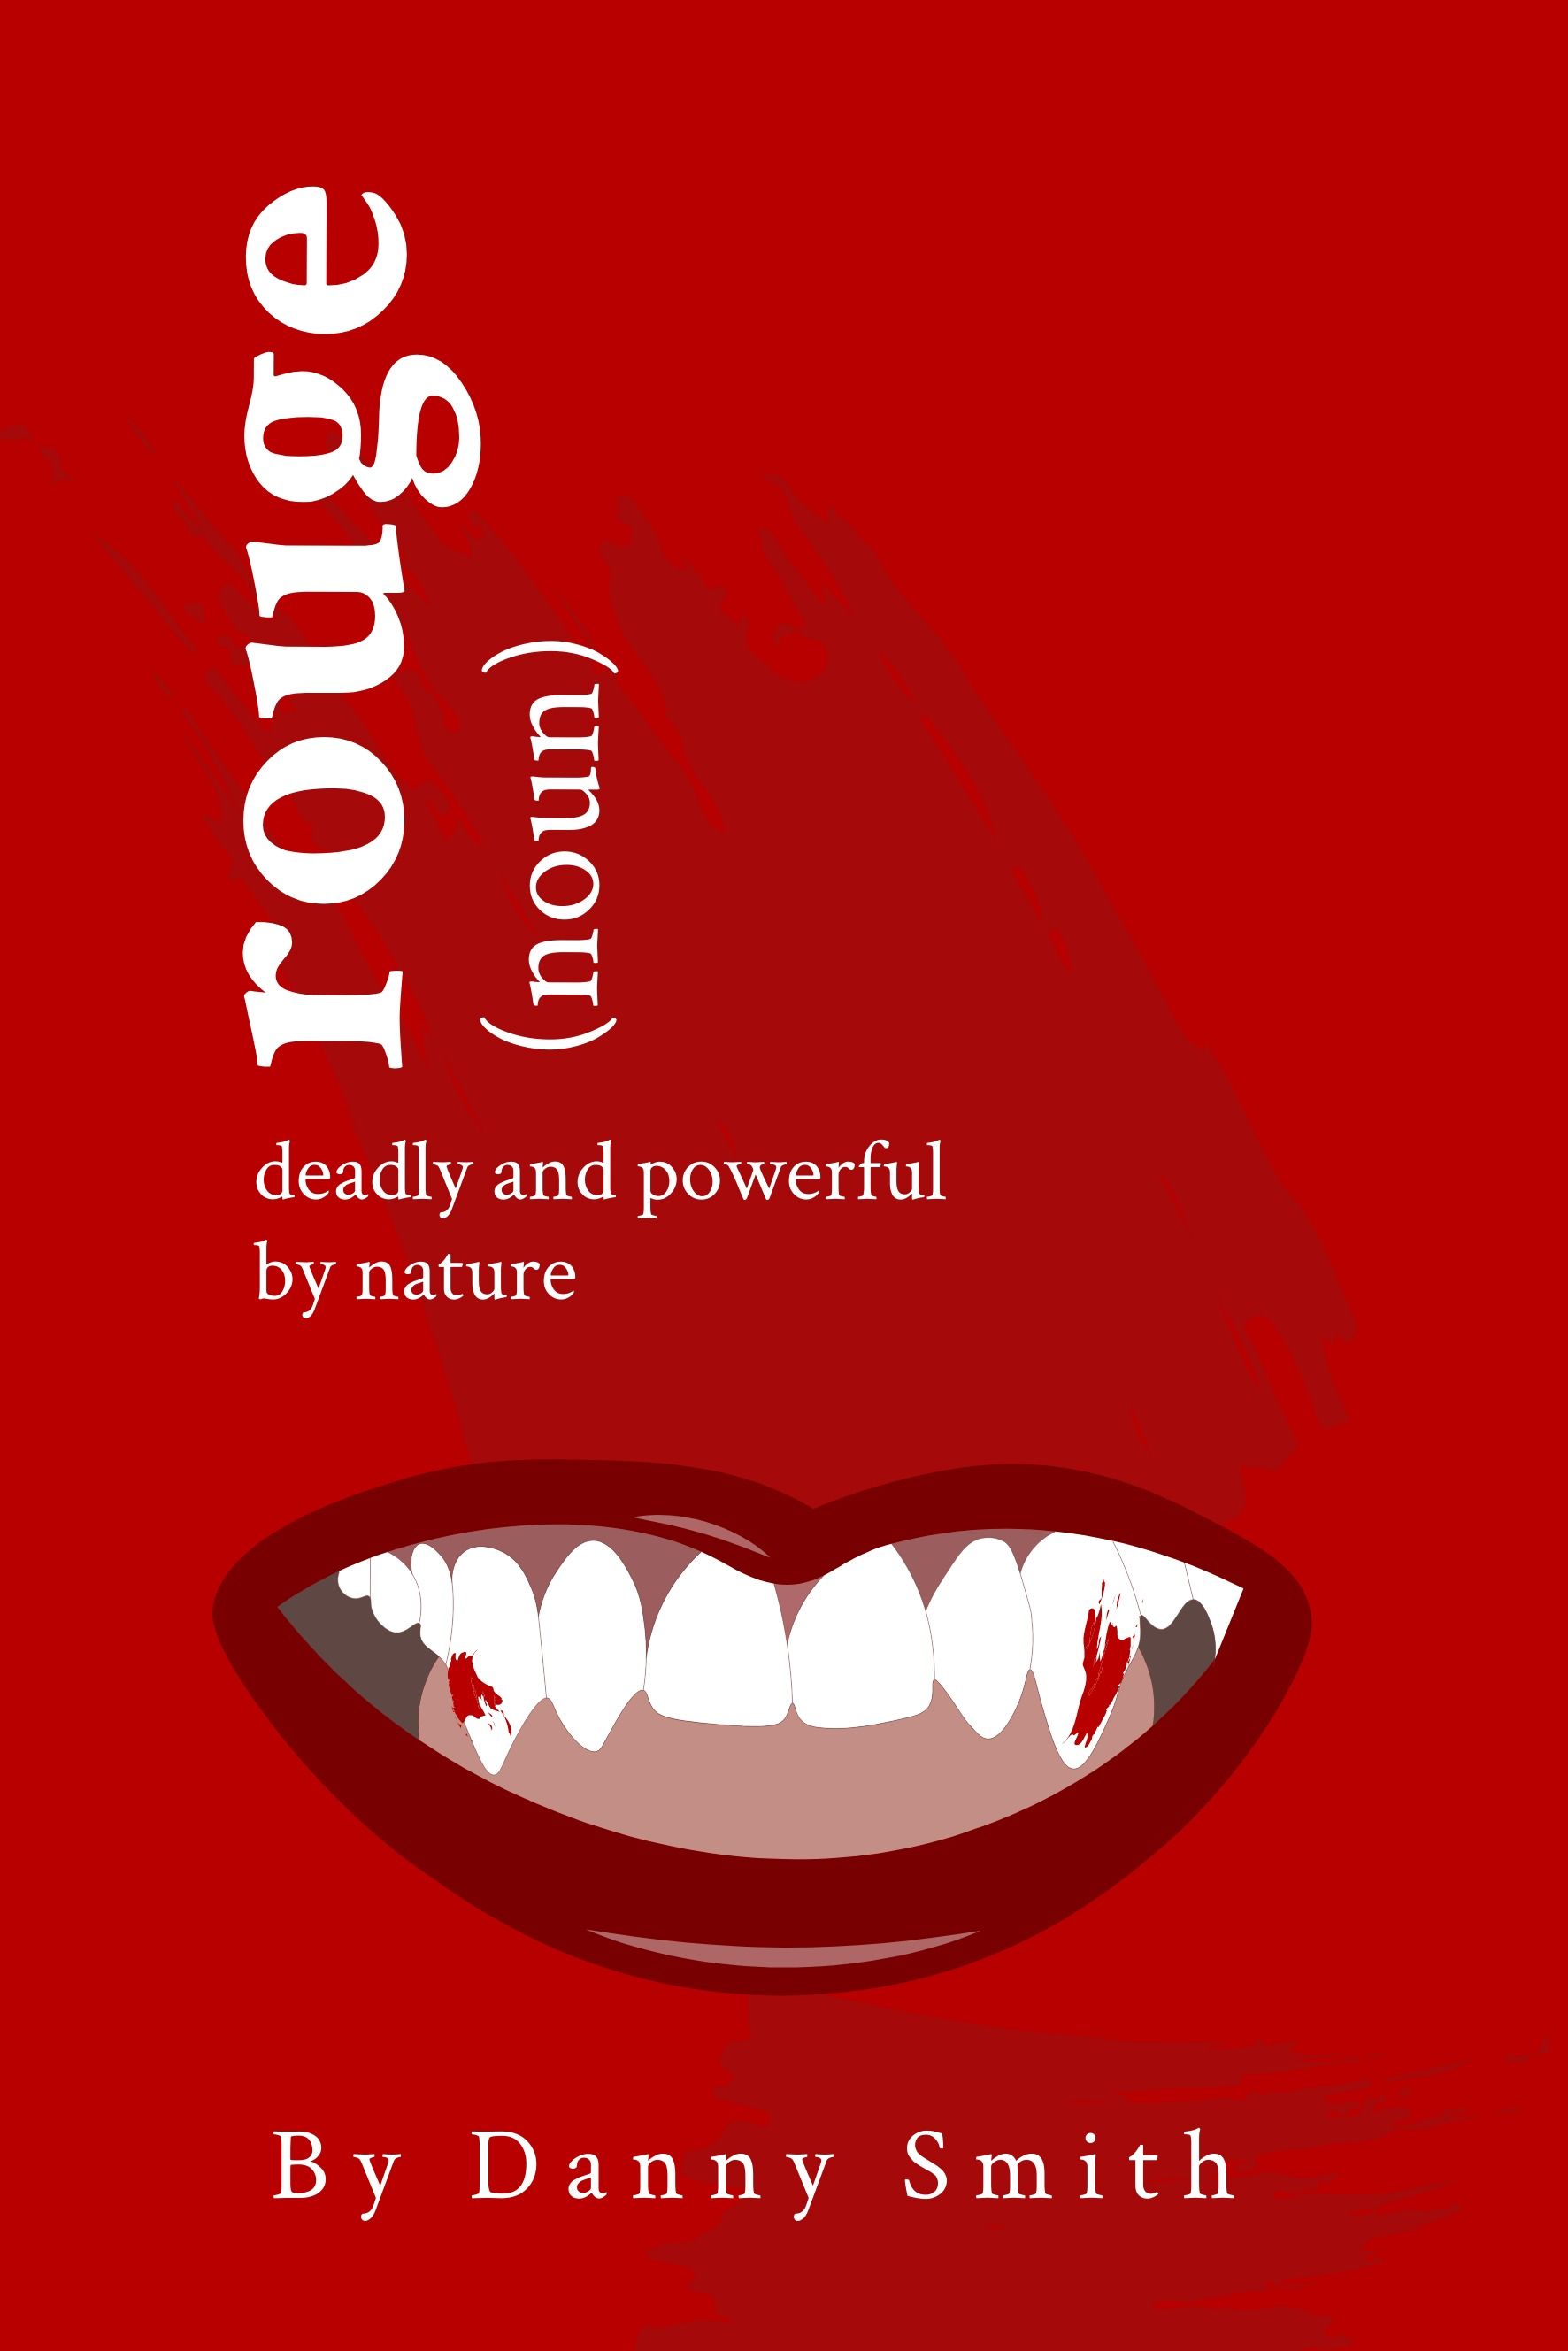 Buchcover "Shades of Red" mit 'Rouge' vom Platzhalter-Autor 'Danny Smith' in Serifenschrift und Lippen-Symbol - Der komplette Leitfaden zu Schriftarten: 5 wesentliche Schriftarten-Typen in der Typografie - Bild